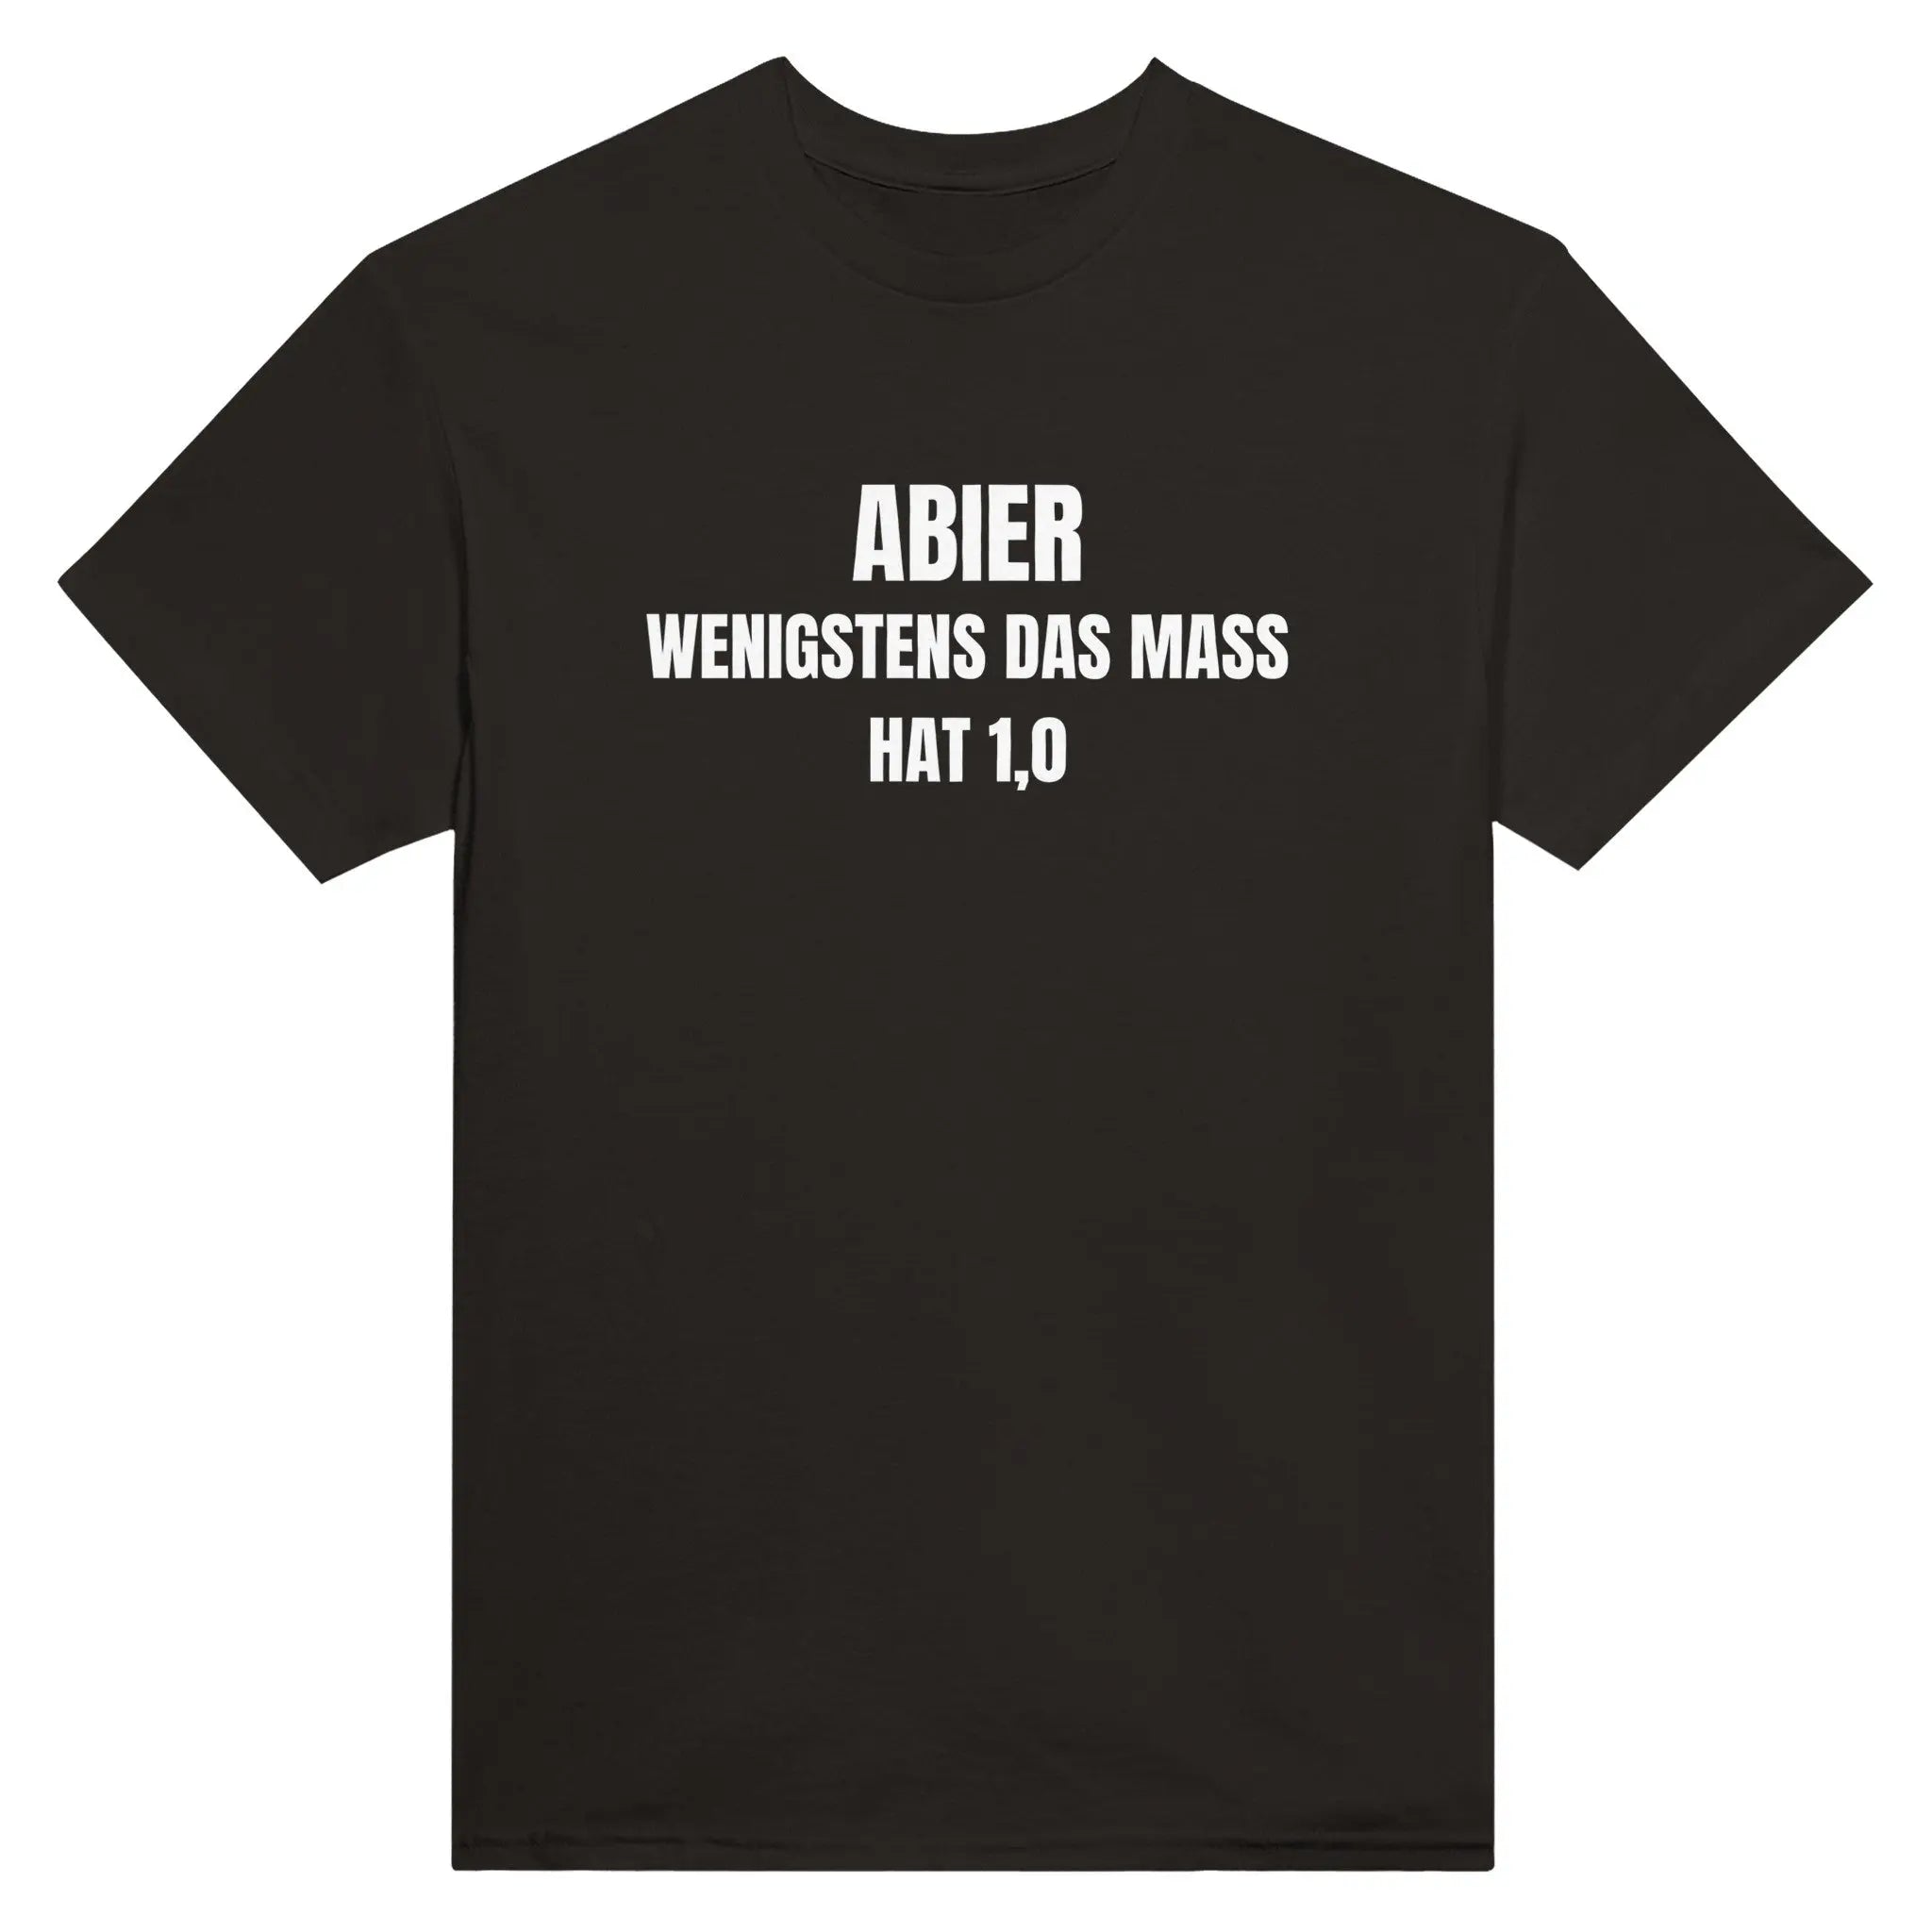 ABIer - Wenigstens das Mass hat 1,0 T-Shirt